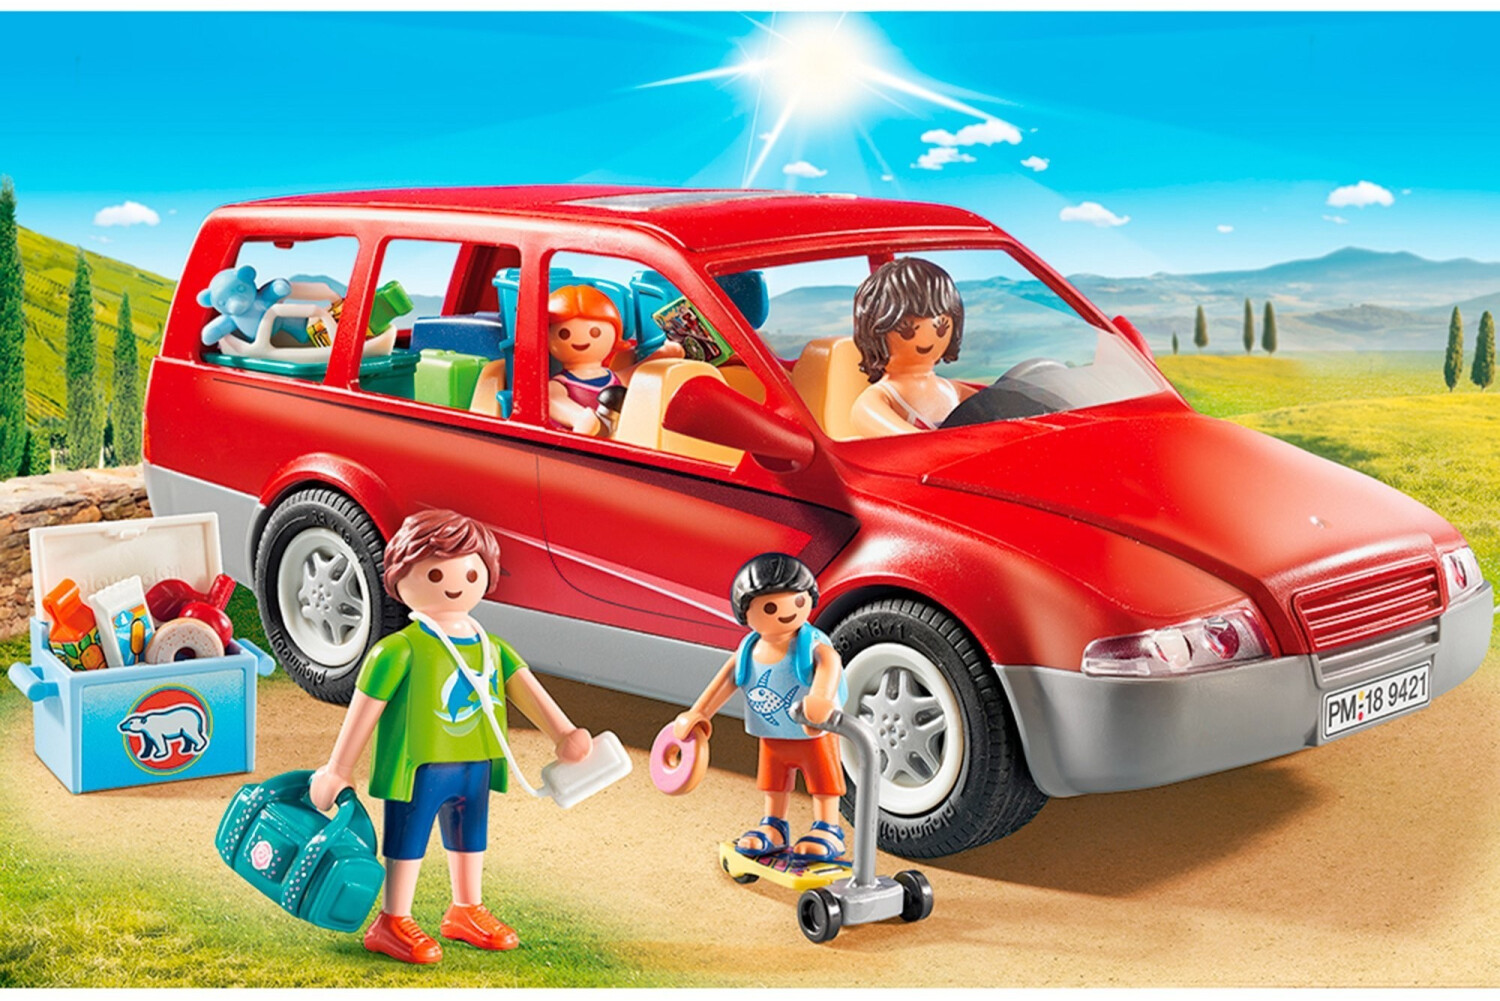 Soldes Playmobil Famille avec voiture (9421) 2024 au meilleur prix sur